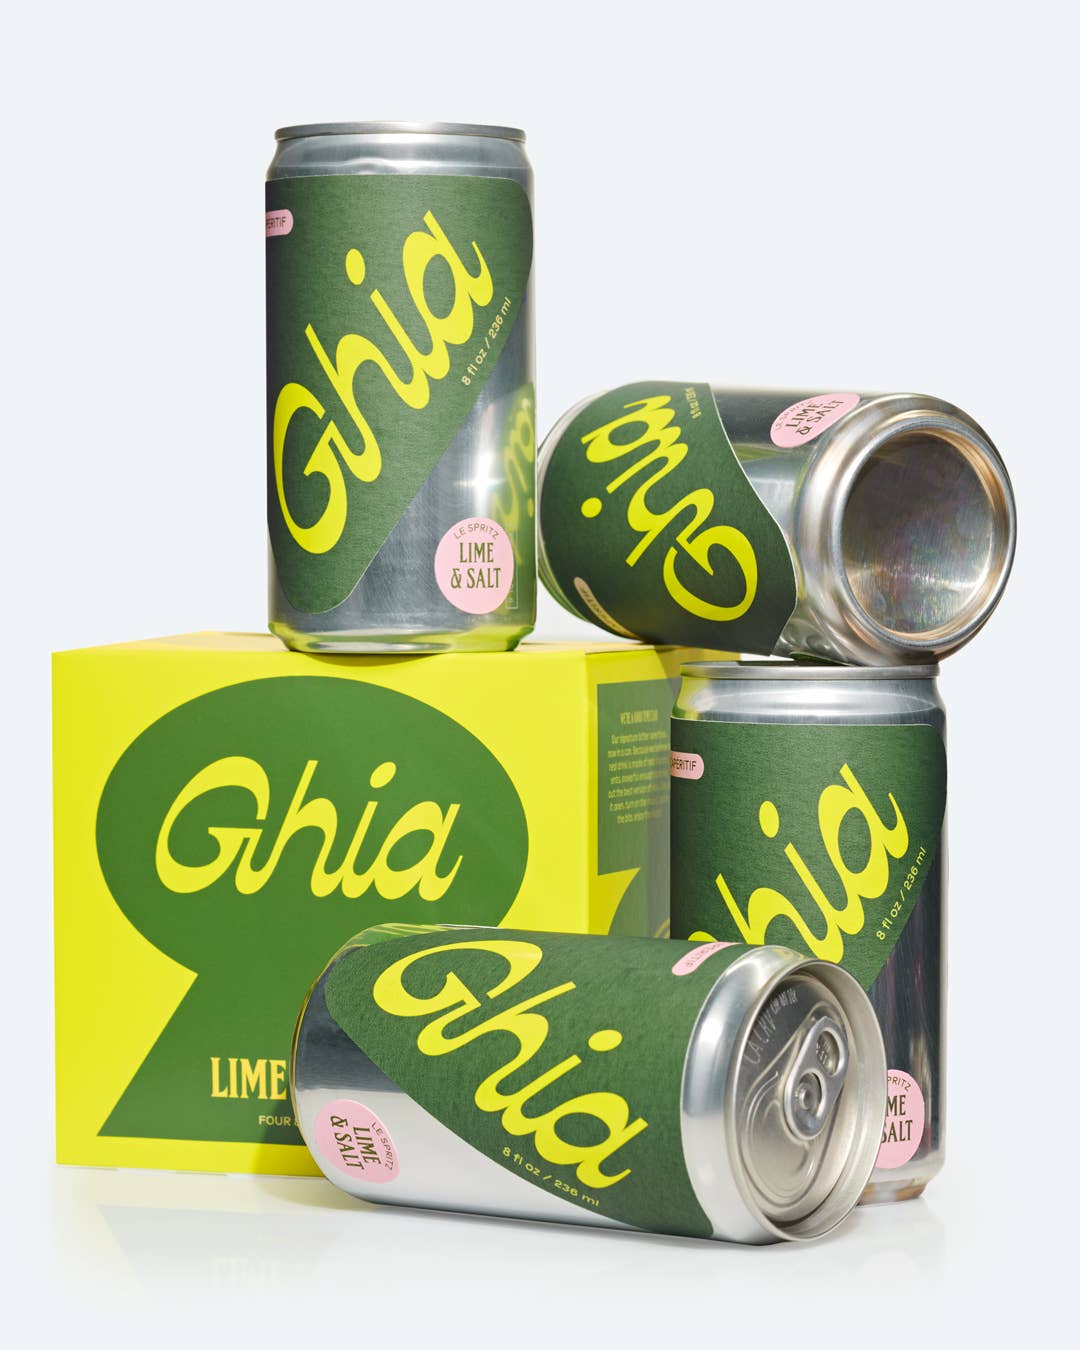 Ghia Lime & Salt